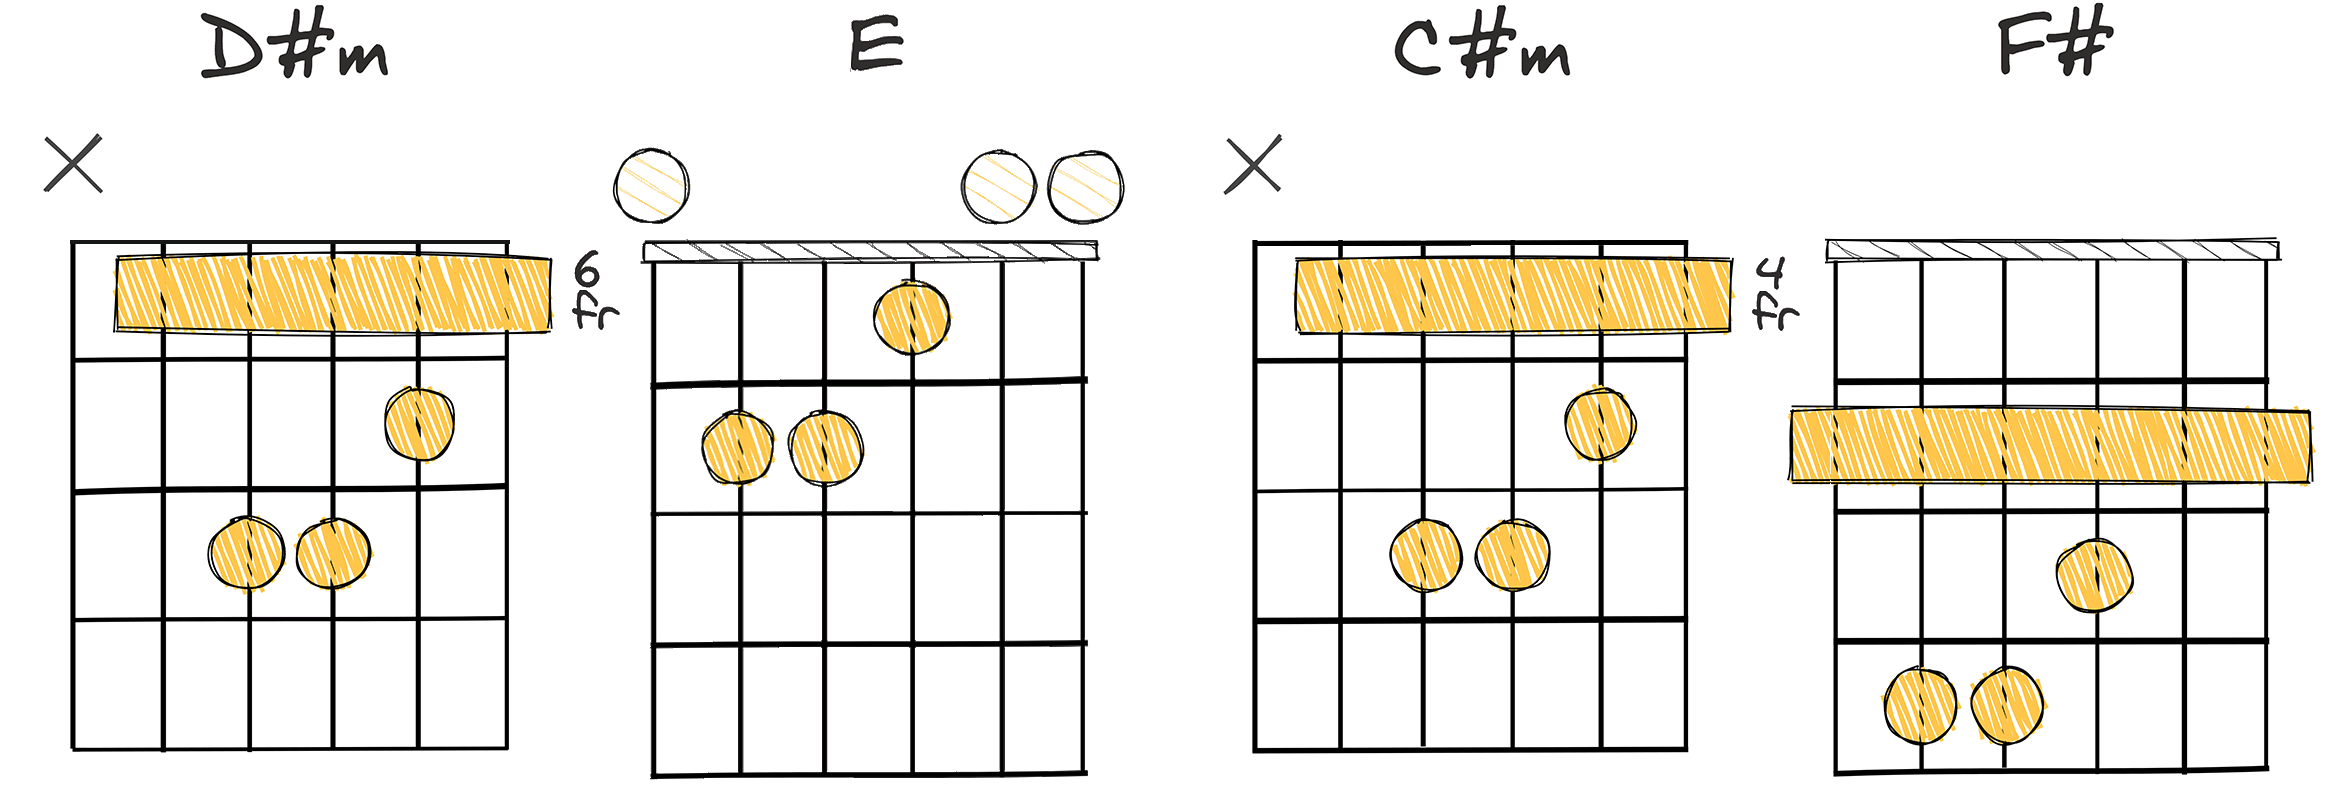 iii – IV – ii – V (3-4-2-5) chords diagram